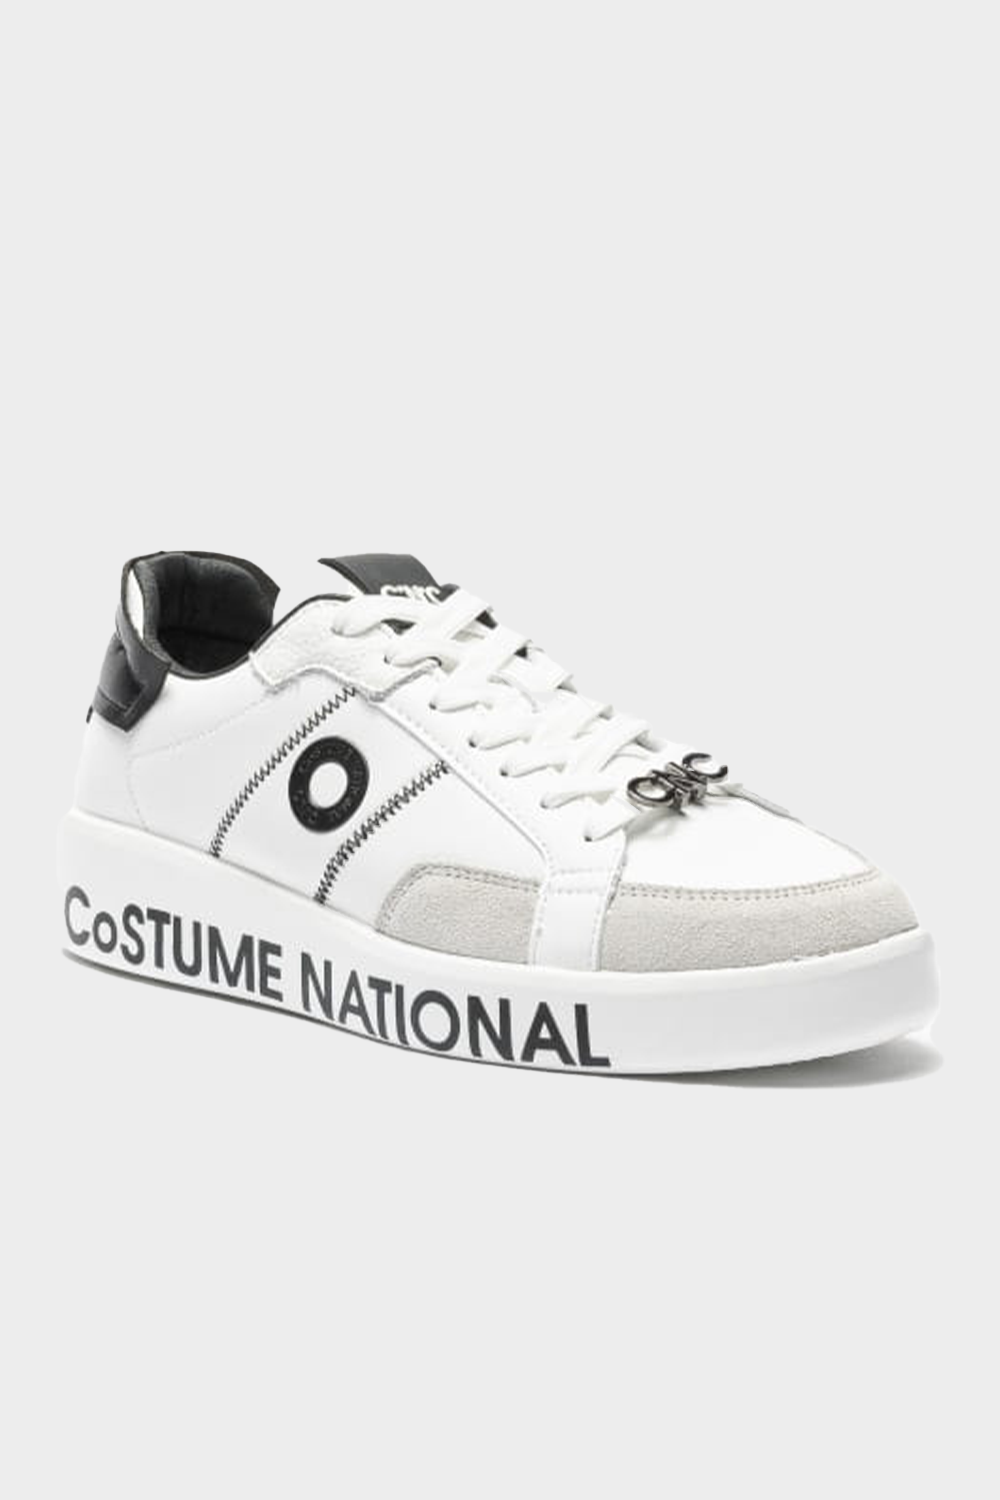 נעלי סניקרס לגברים בצבע לבן COSTUME NATIONAL Vendome online | ונדום .